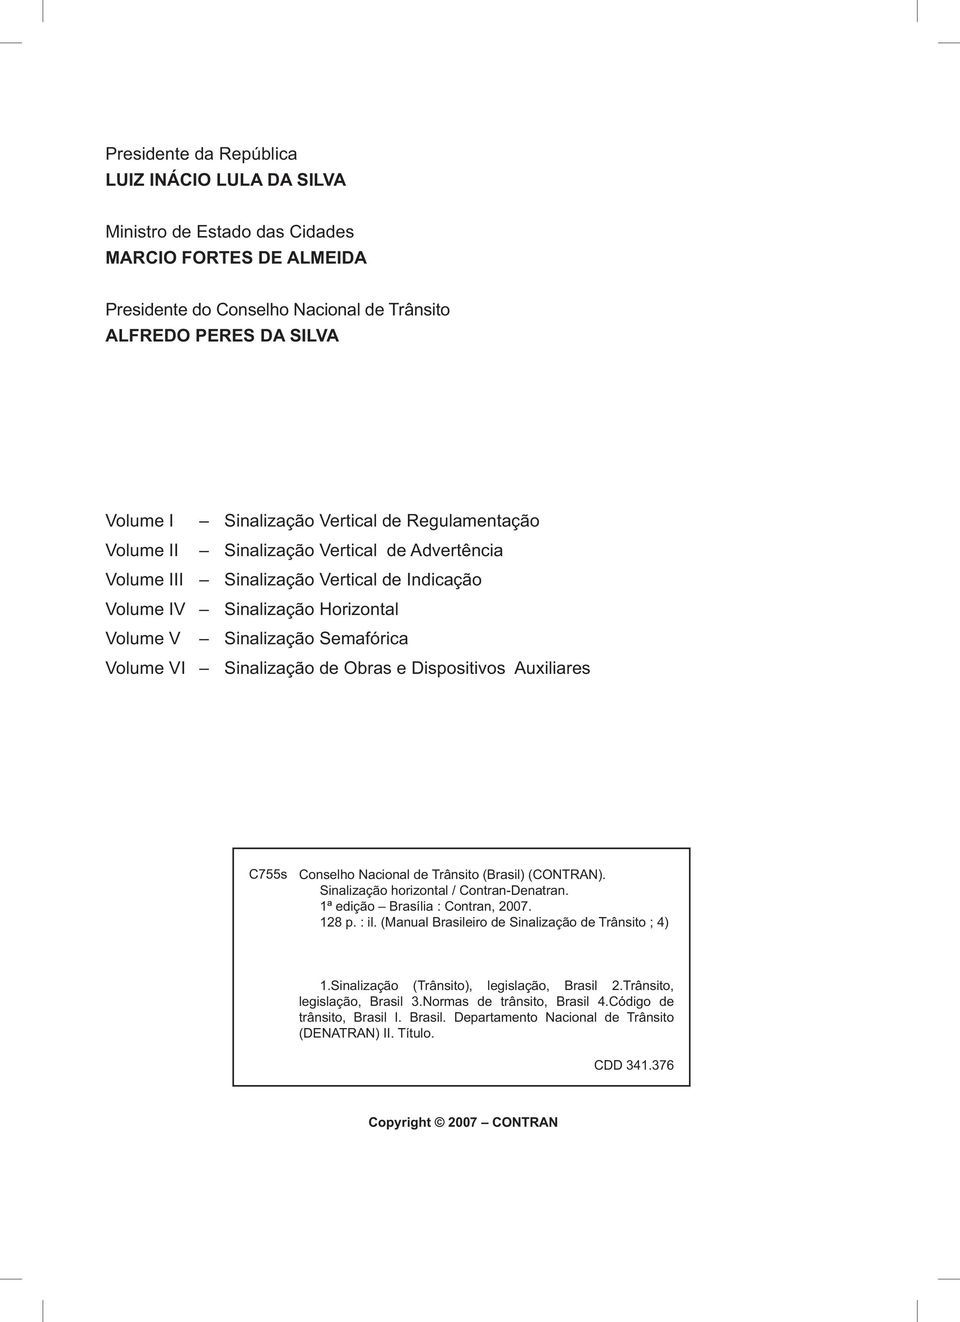 Sinalização de Obras e Dispositivos Auxiliares C755s Conselho Nacional de Trânsito (Brasil) (CONTRAN). Sinalização horizontal / Contran-Denatran. 1ª edição Brasília : Contran, 2007. 128 p. : il.